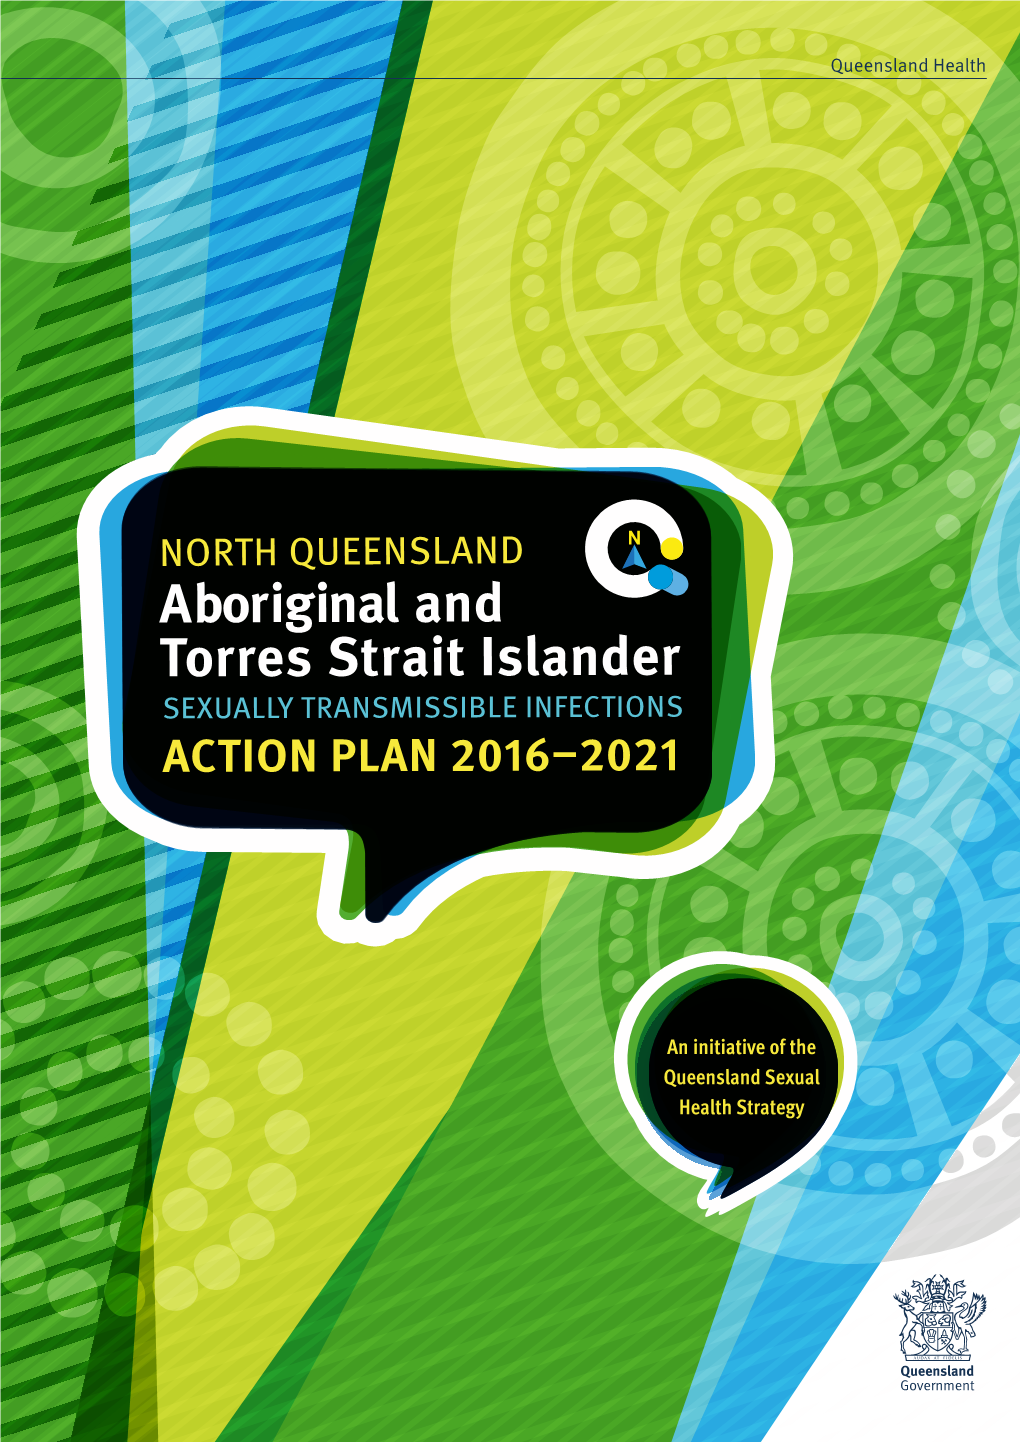 NQ Aboriginal and Torres Strait Islander STI Action Plan 2016-2021